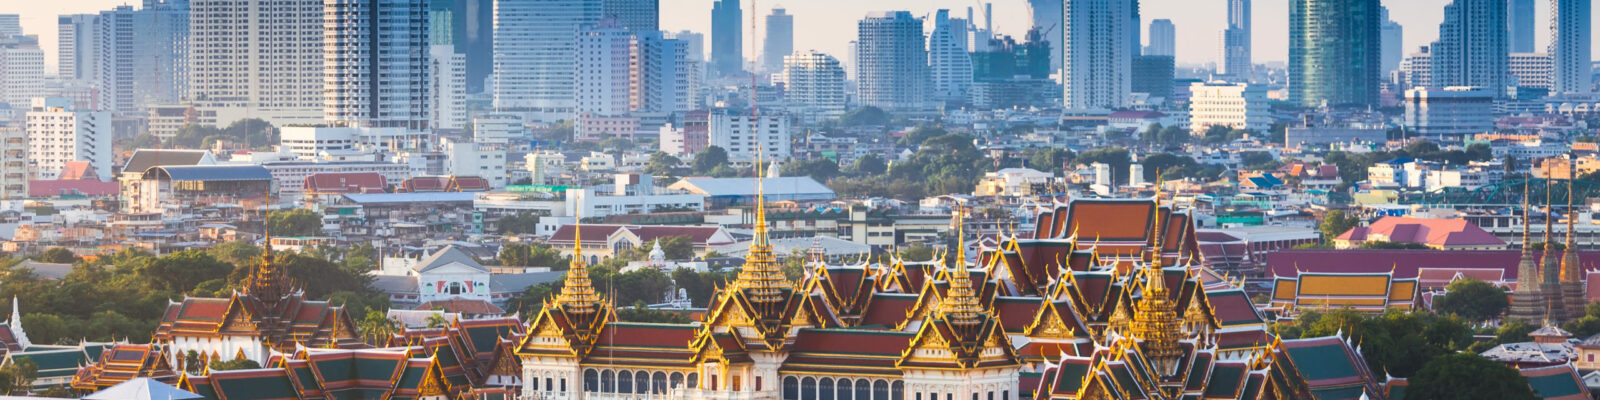 Sunrise with Grand Palace of Bangkok, Thailand